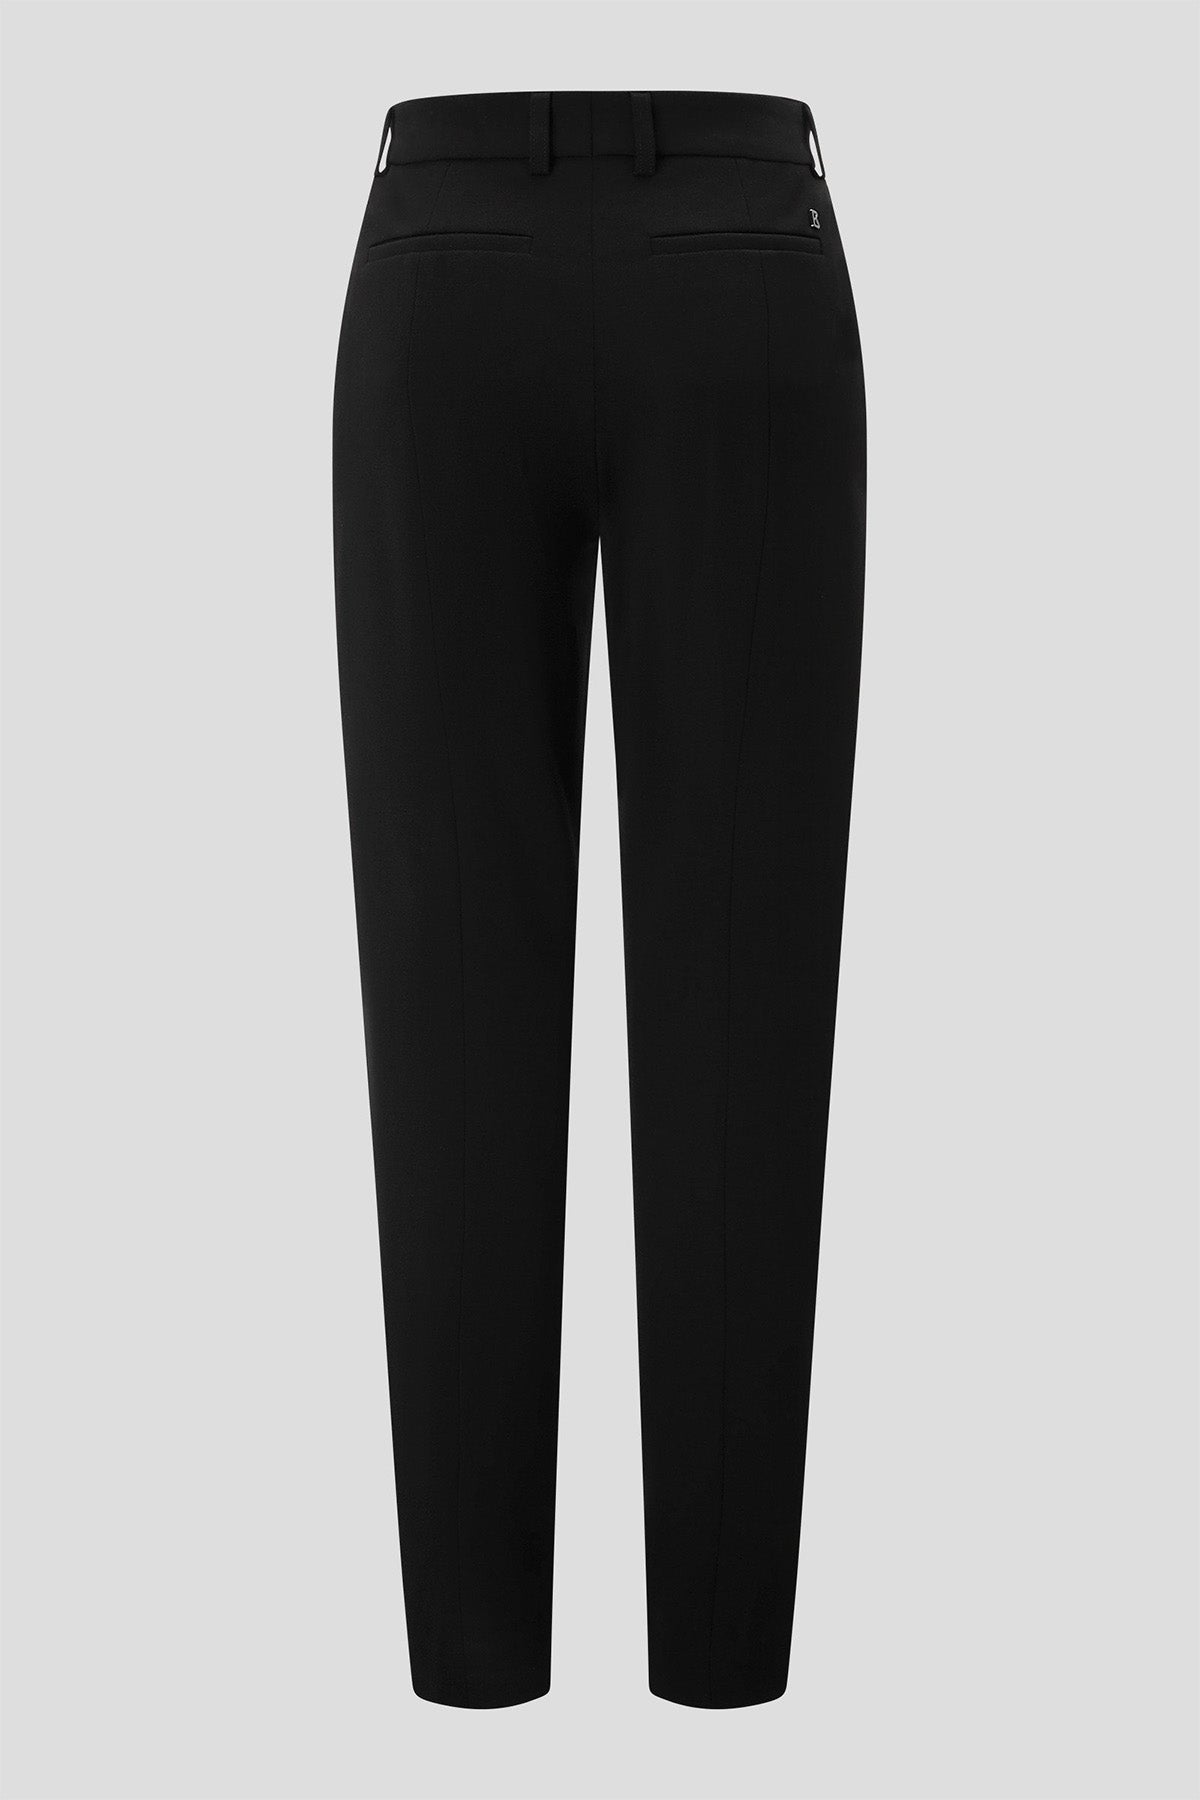 Bogner Joy Slim Fit Streç Pantolon-Libas Trendy Fashion Store